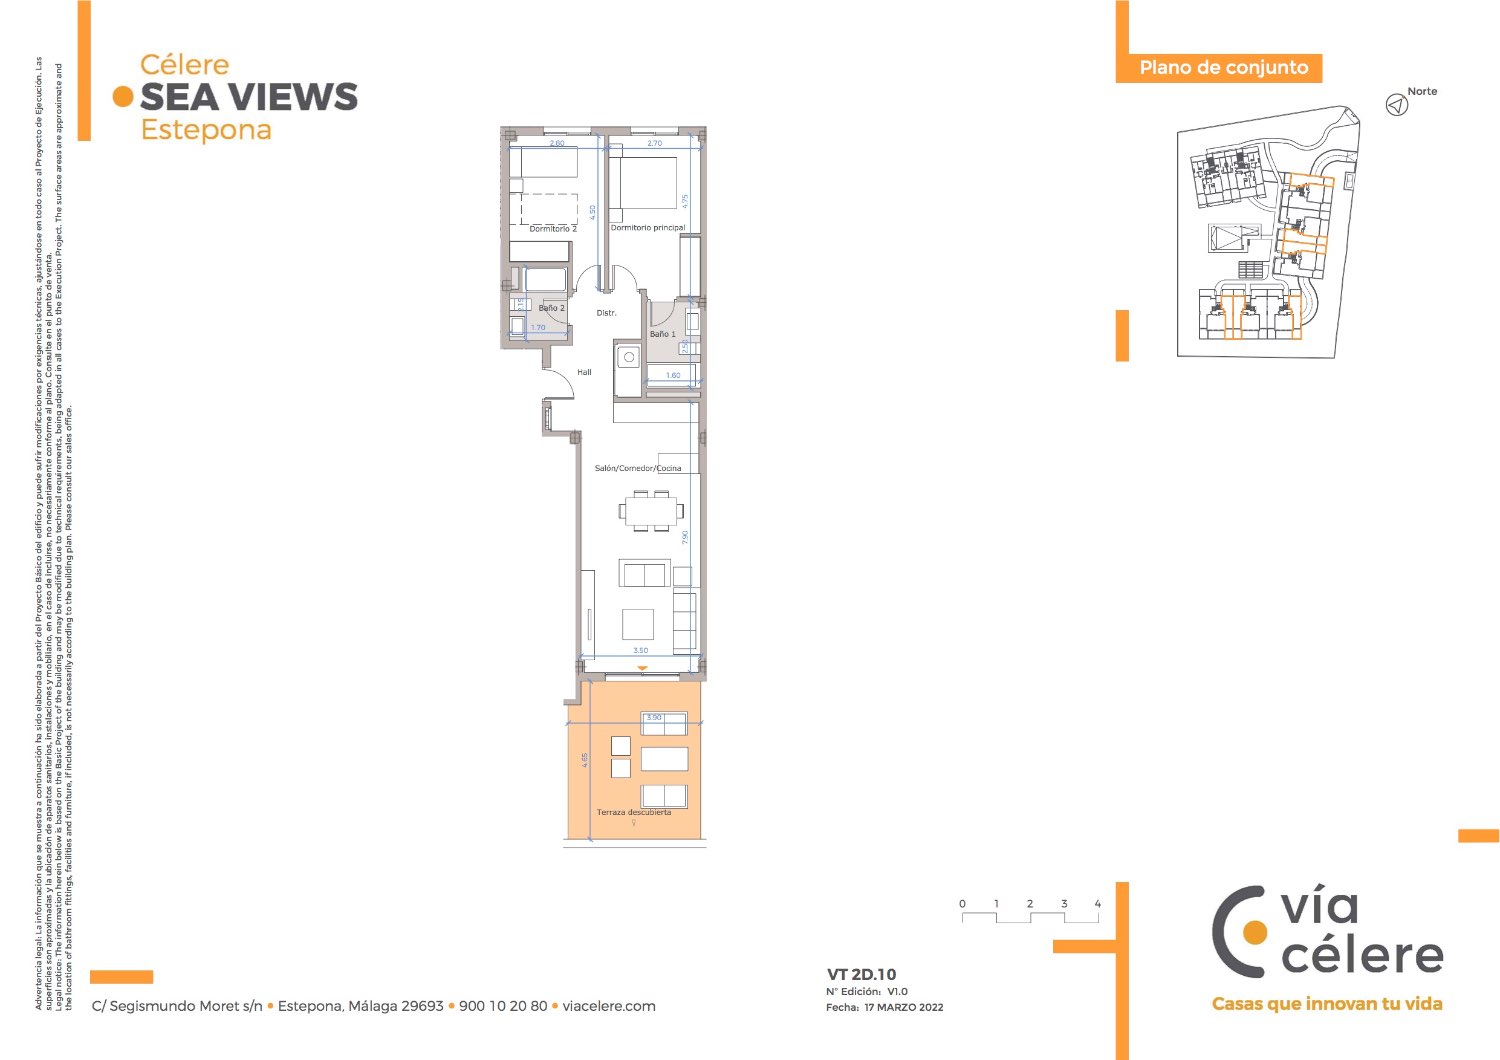 Luxuriöse Wohnung mit zwei Schlafzimmern in einer neuen Wohnanlage in Estepona - Costa del Sol